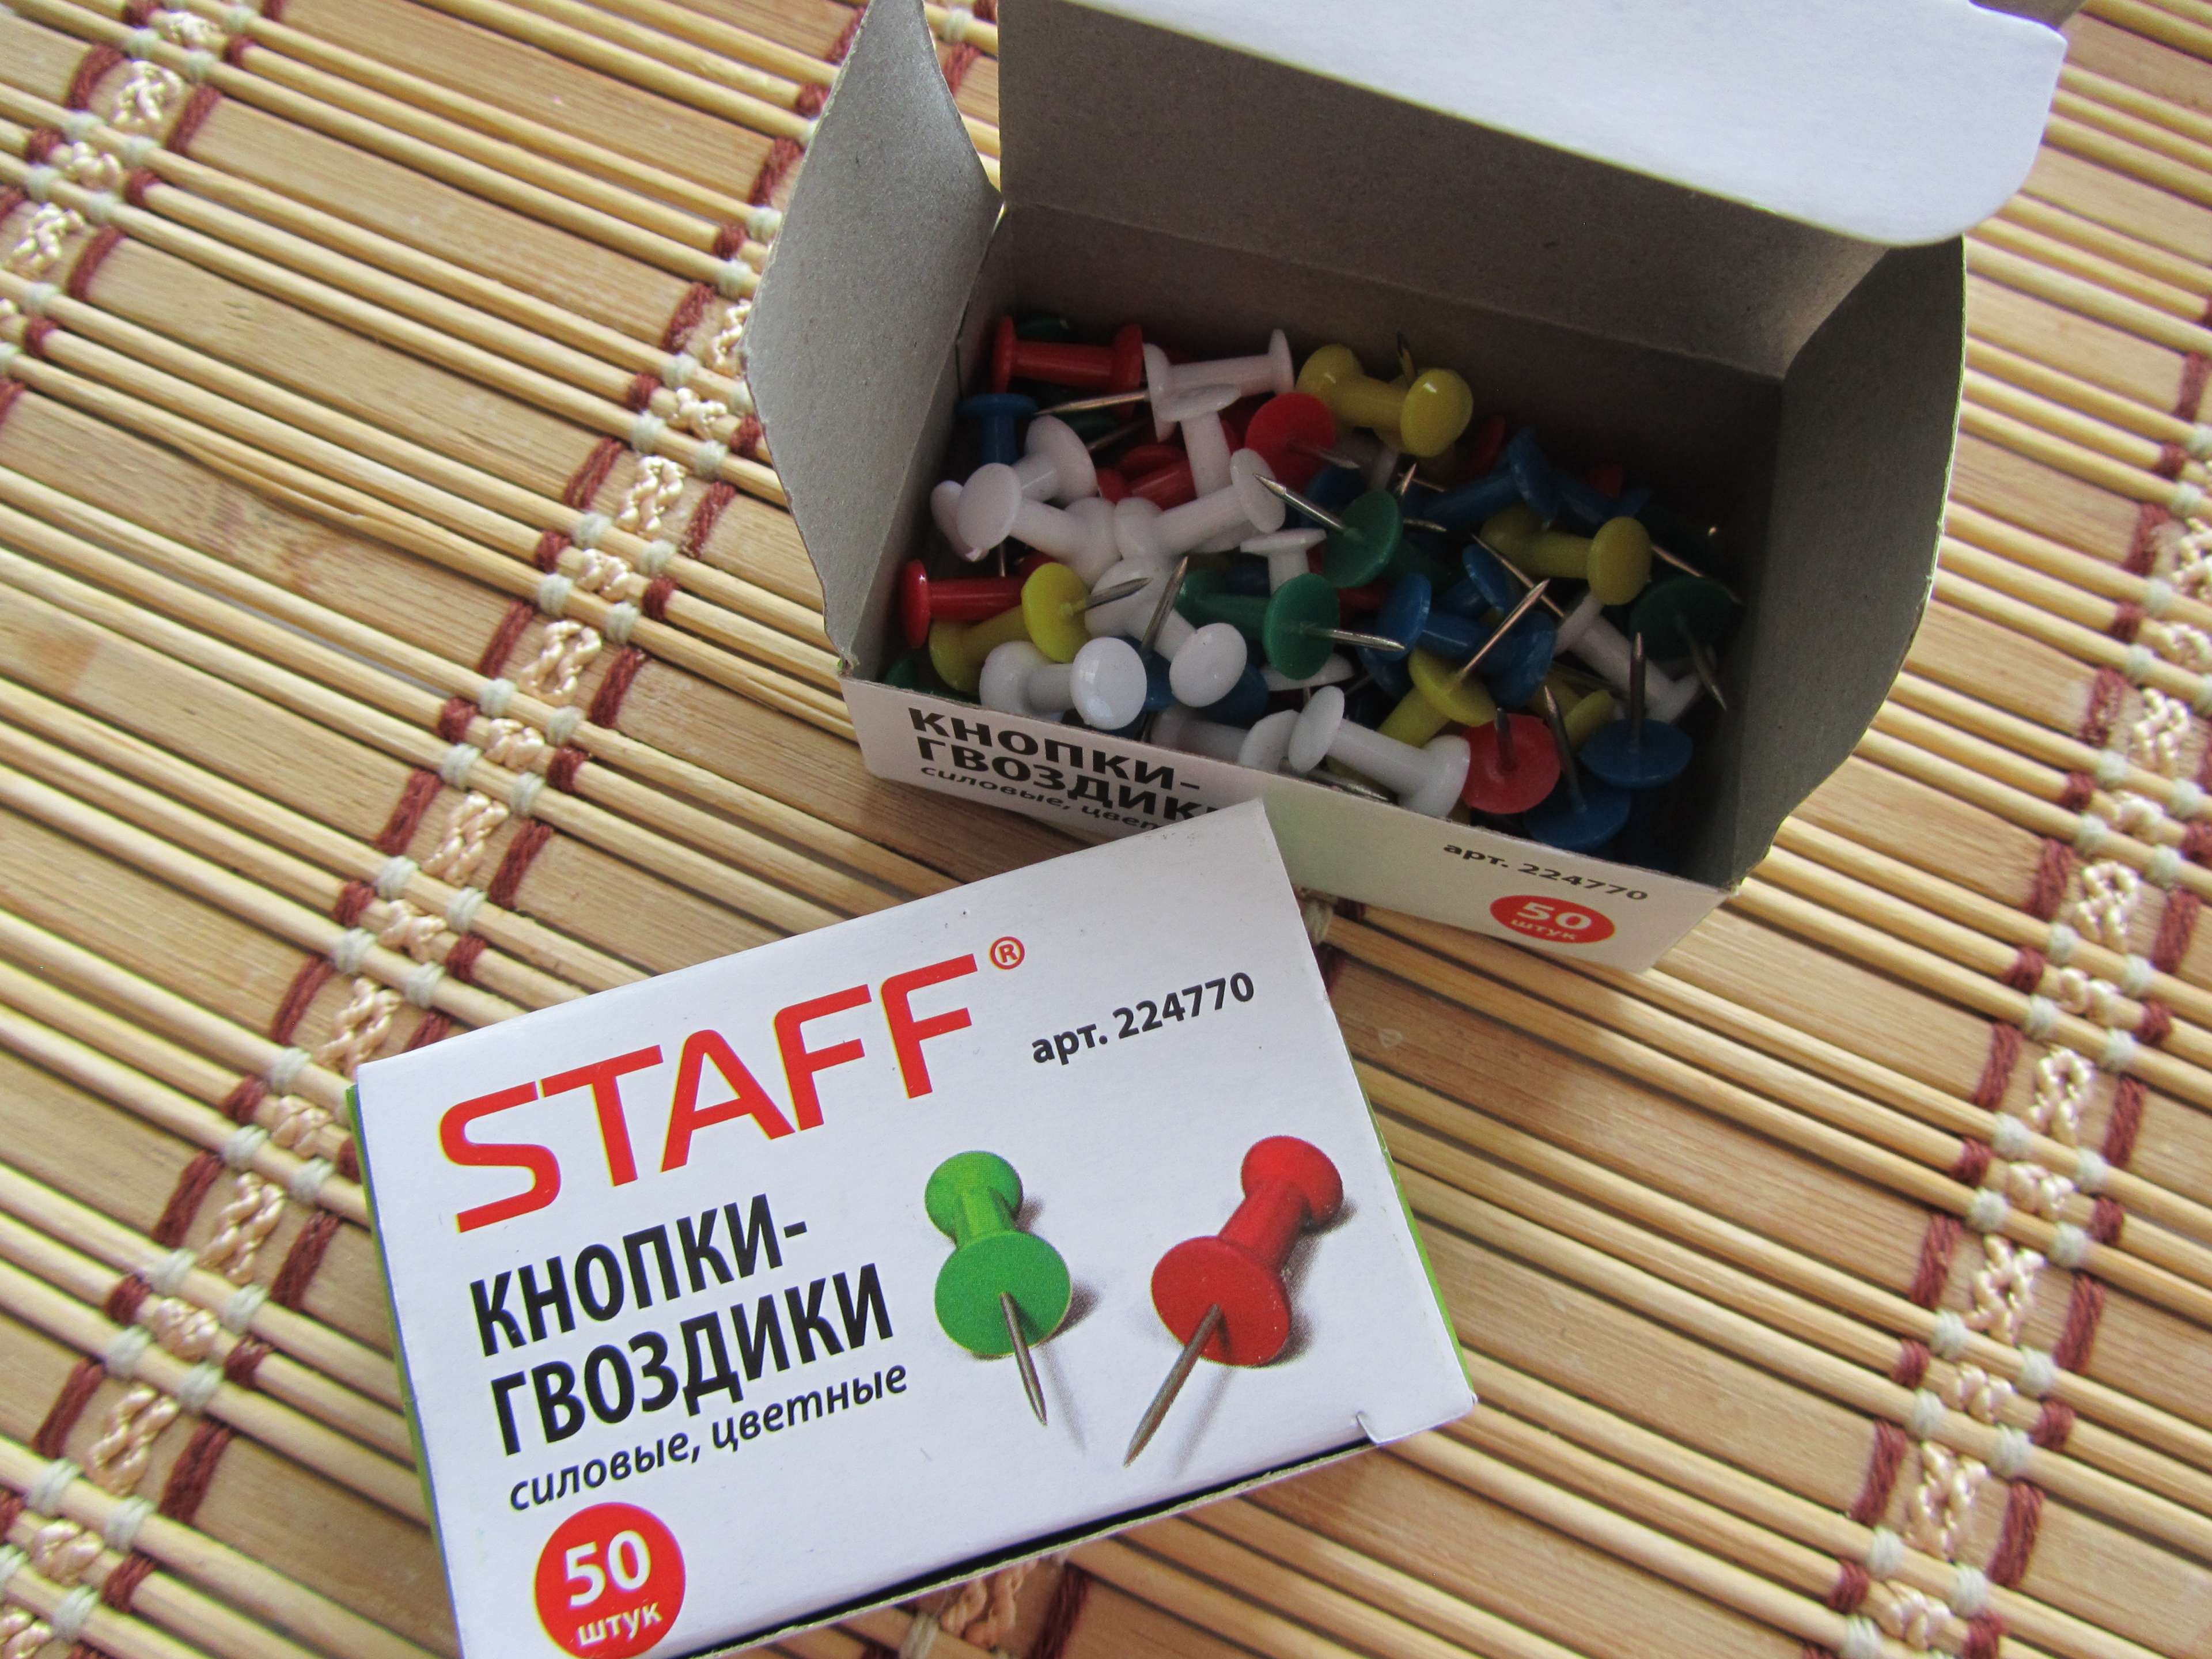 Фотография покупателя товара Кнопки силовые, цветные, 50 шт., STAFF , в картонной коробке